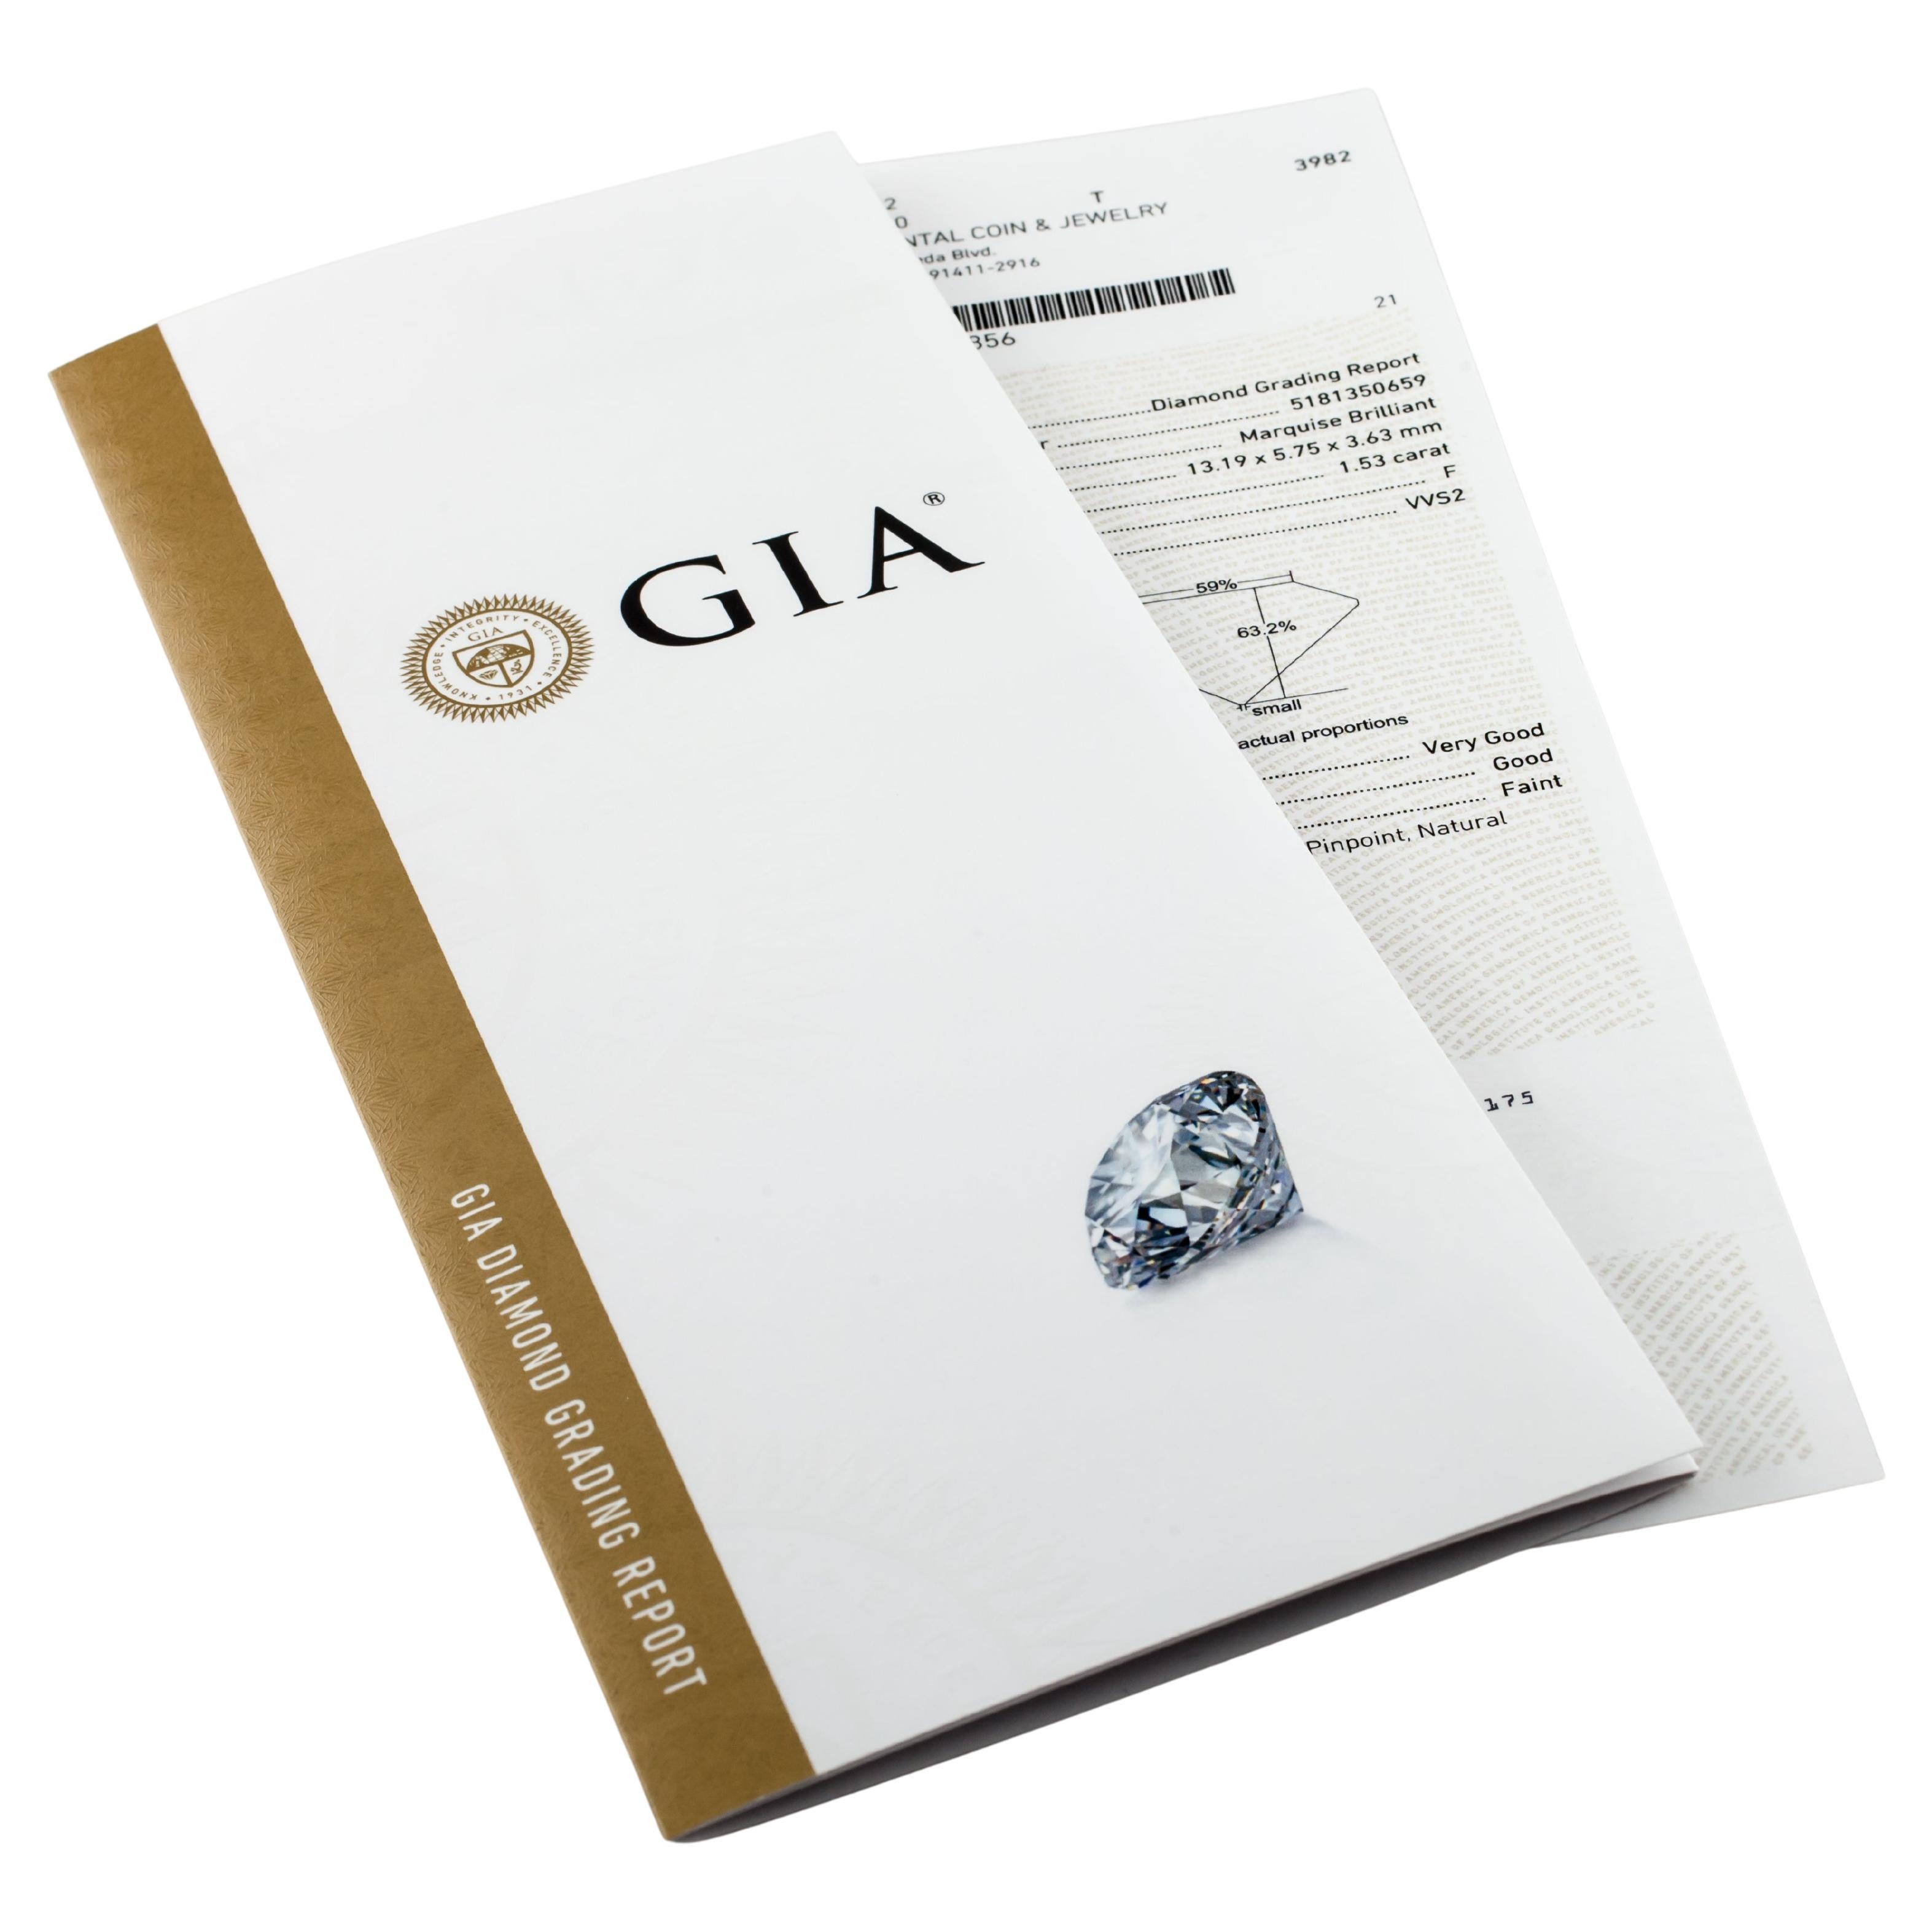 Informations générales sur le diamant
Numéro de rapport GIA : 5181350659
Taille du diamant : Marquise
Dimensions : 13.19  x  5.75  -  3.63

Résultats de la classification des diamants
Poids en carats : 1,53
Grade de couleur : F
Niveau de clarté :